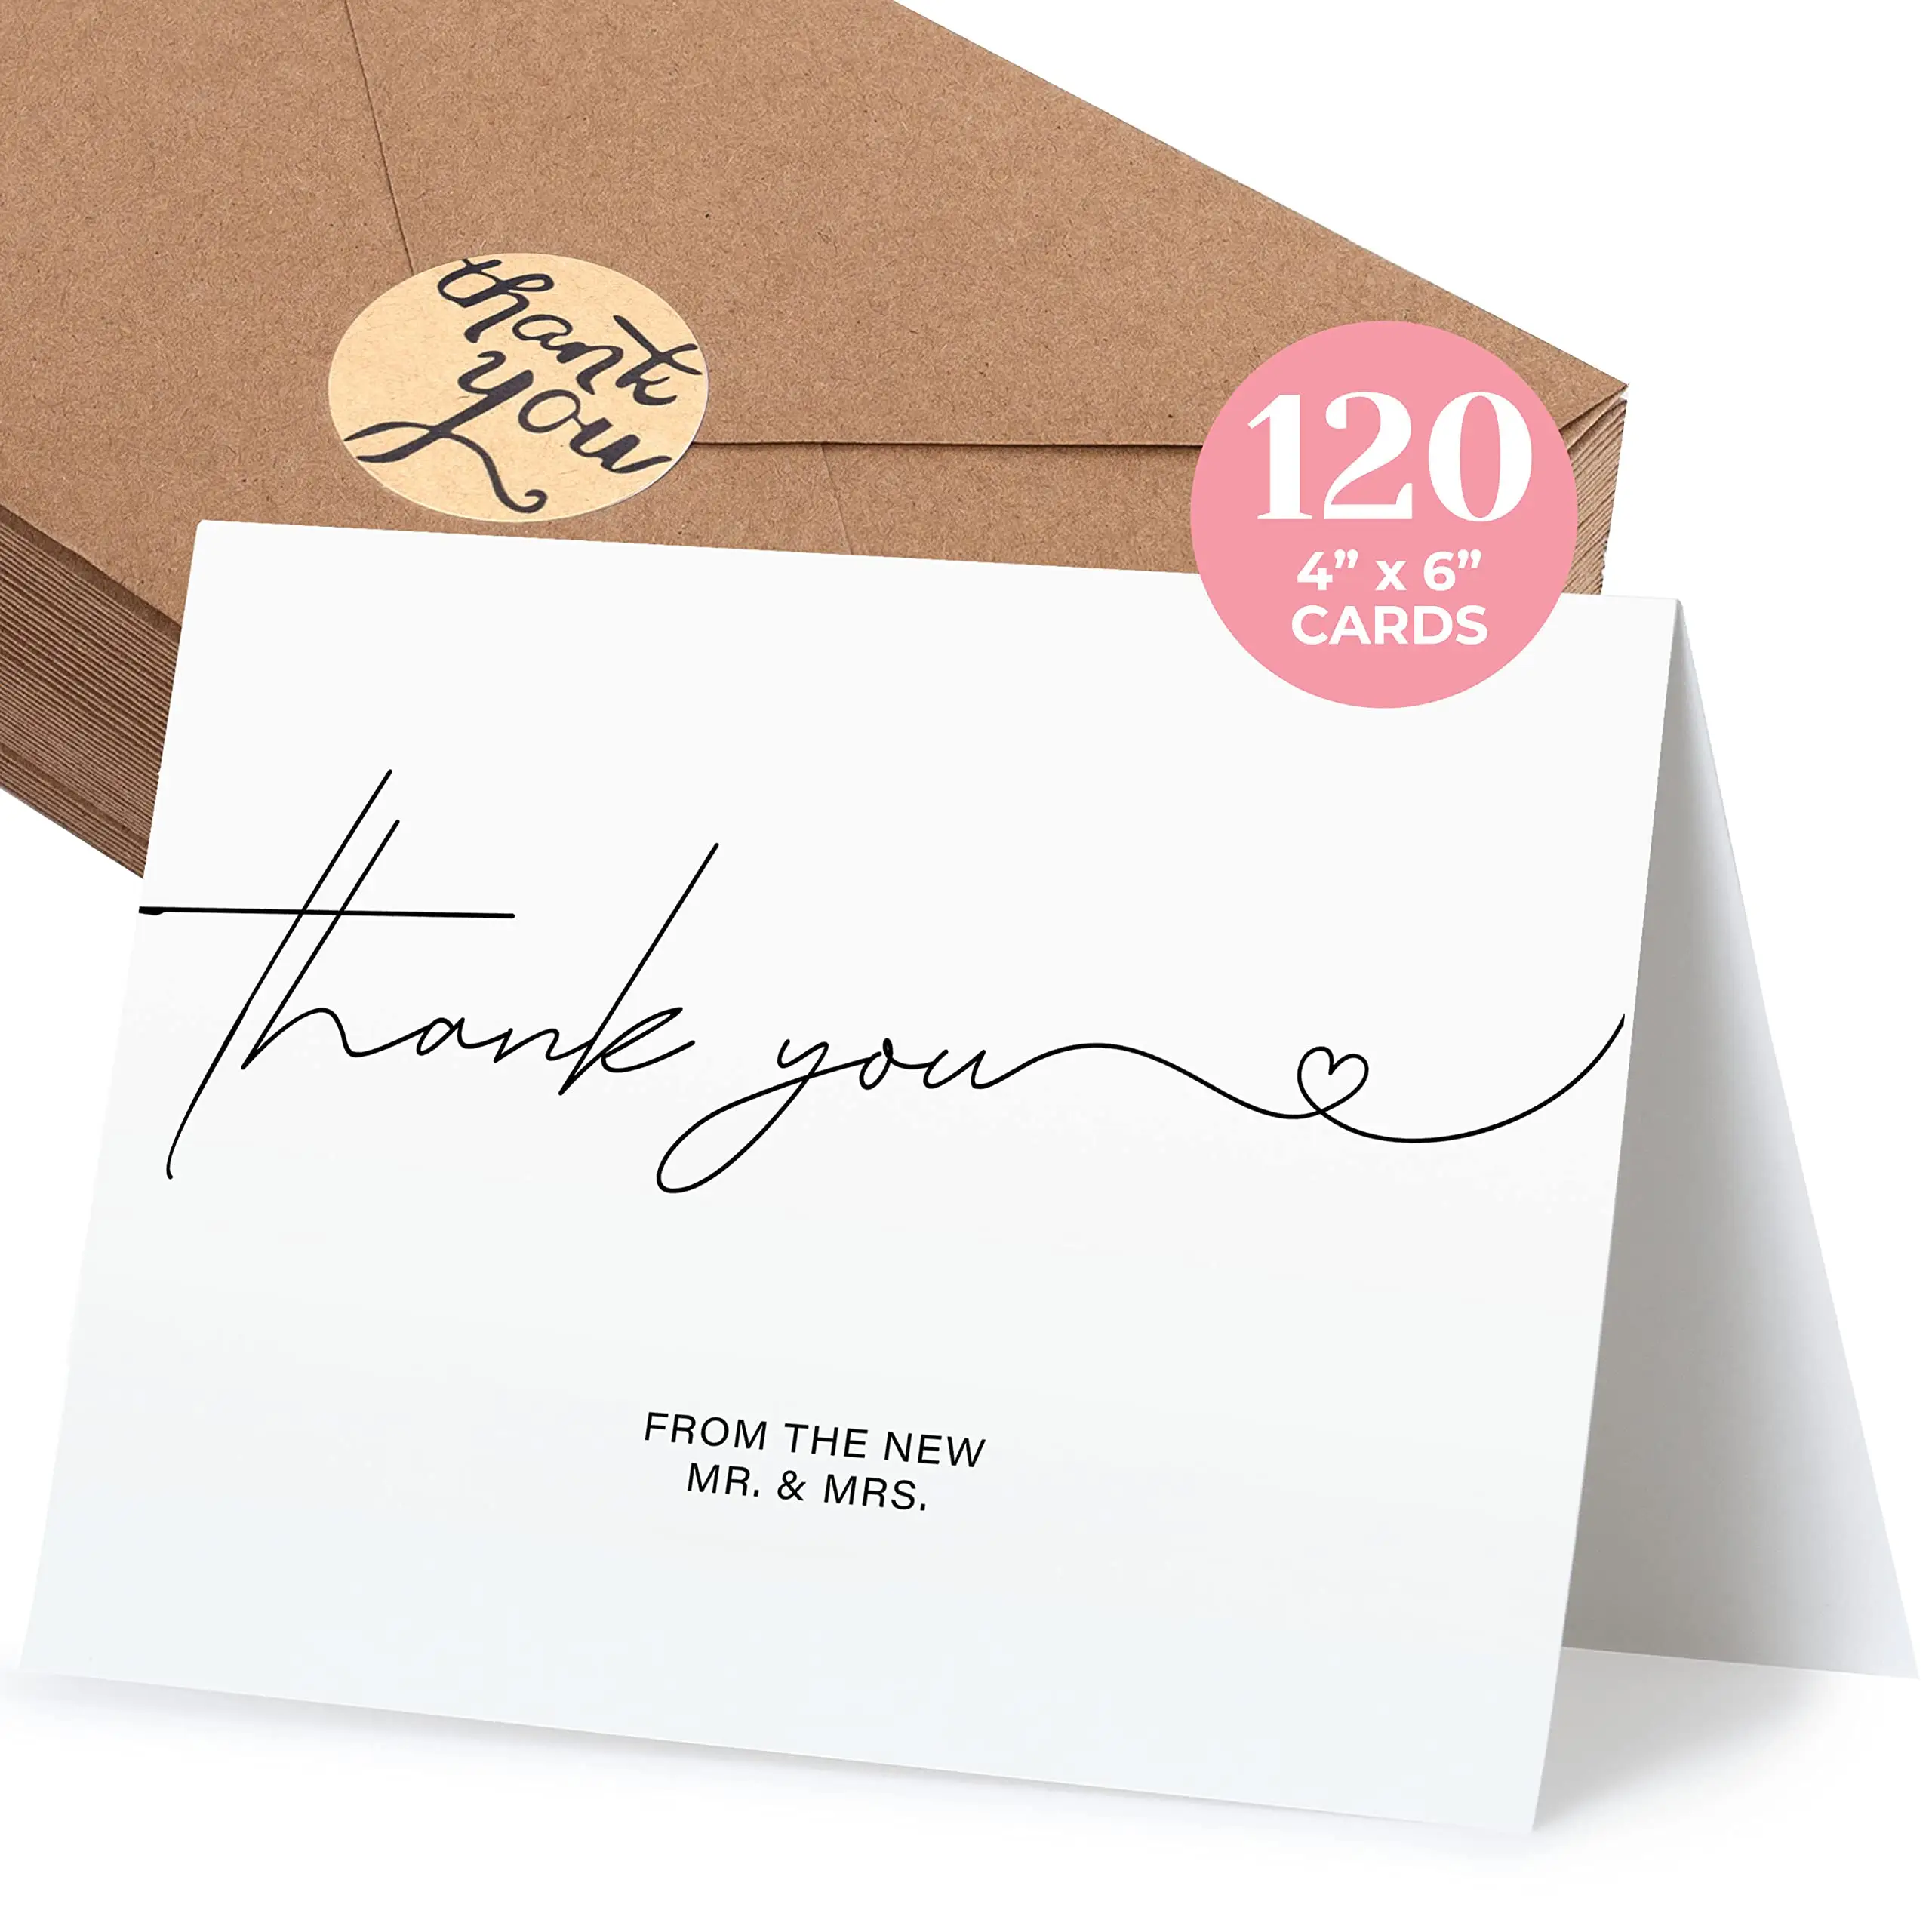 Terima kasih telah mendukung kartu desain gratis pelanggan Terima kasih atas pesanan anda kartu ucapan stok kartu untuk pesta